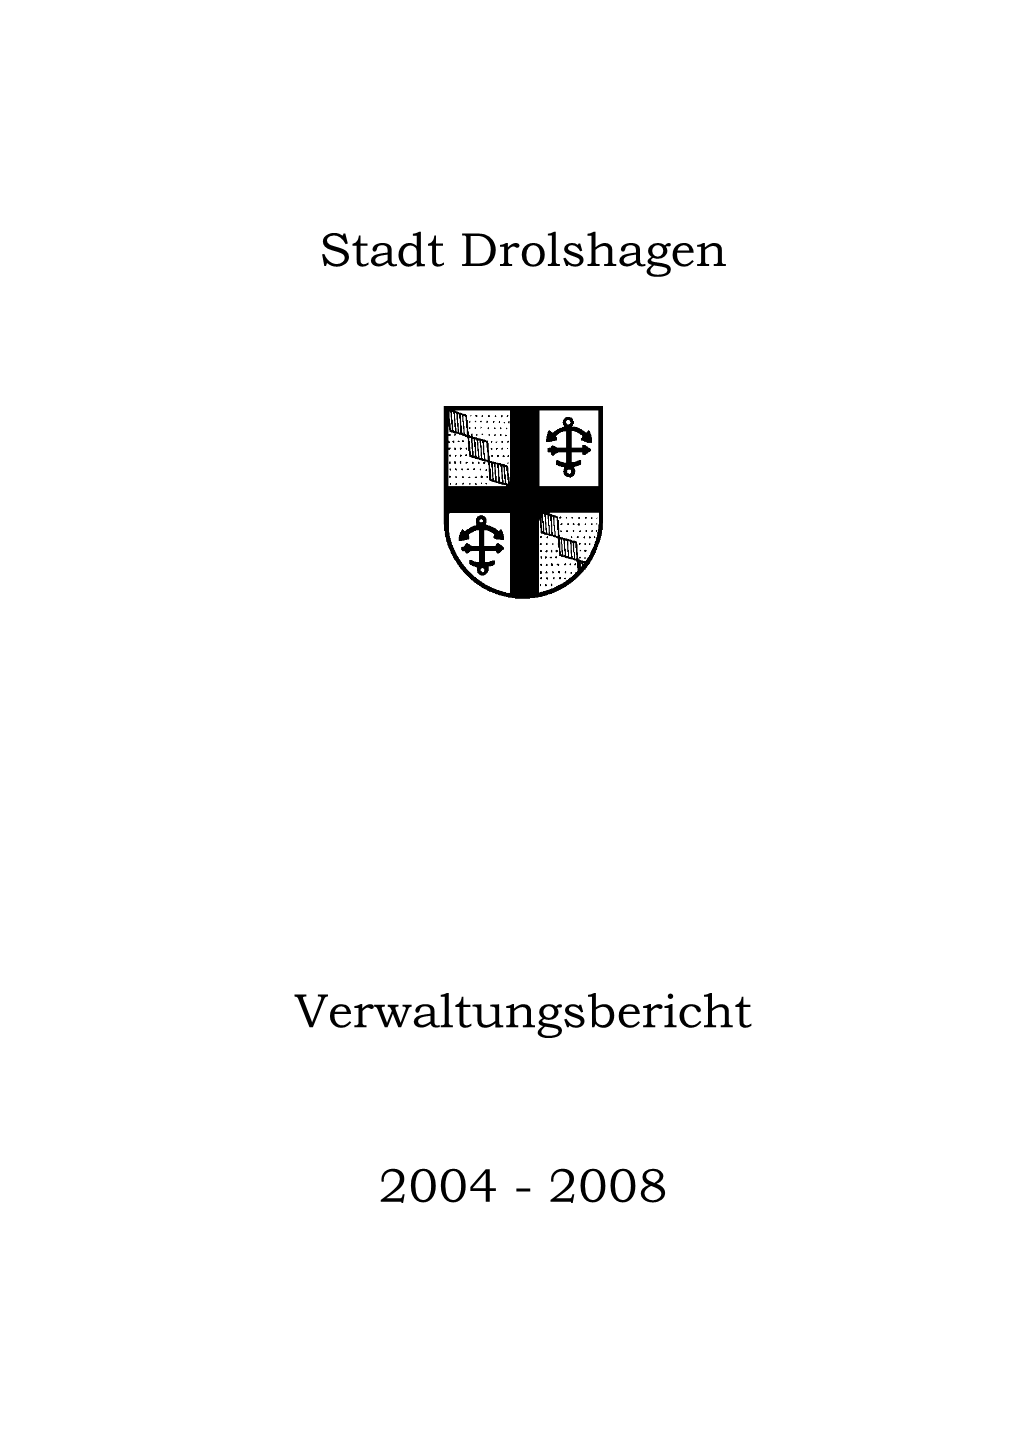 Stadt Drolshagen Verwaltungsbericht 2004